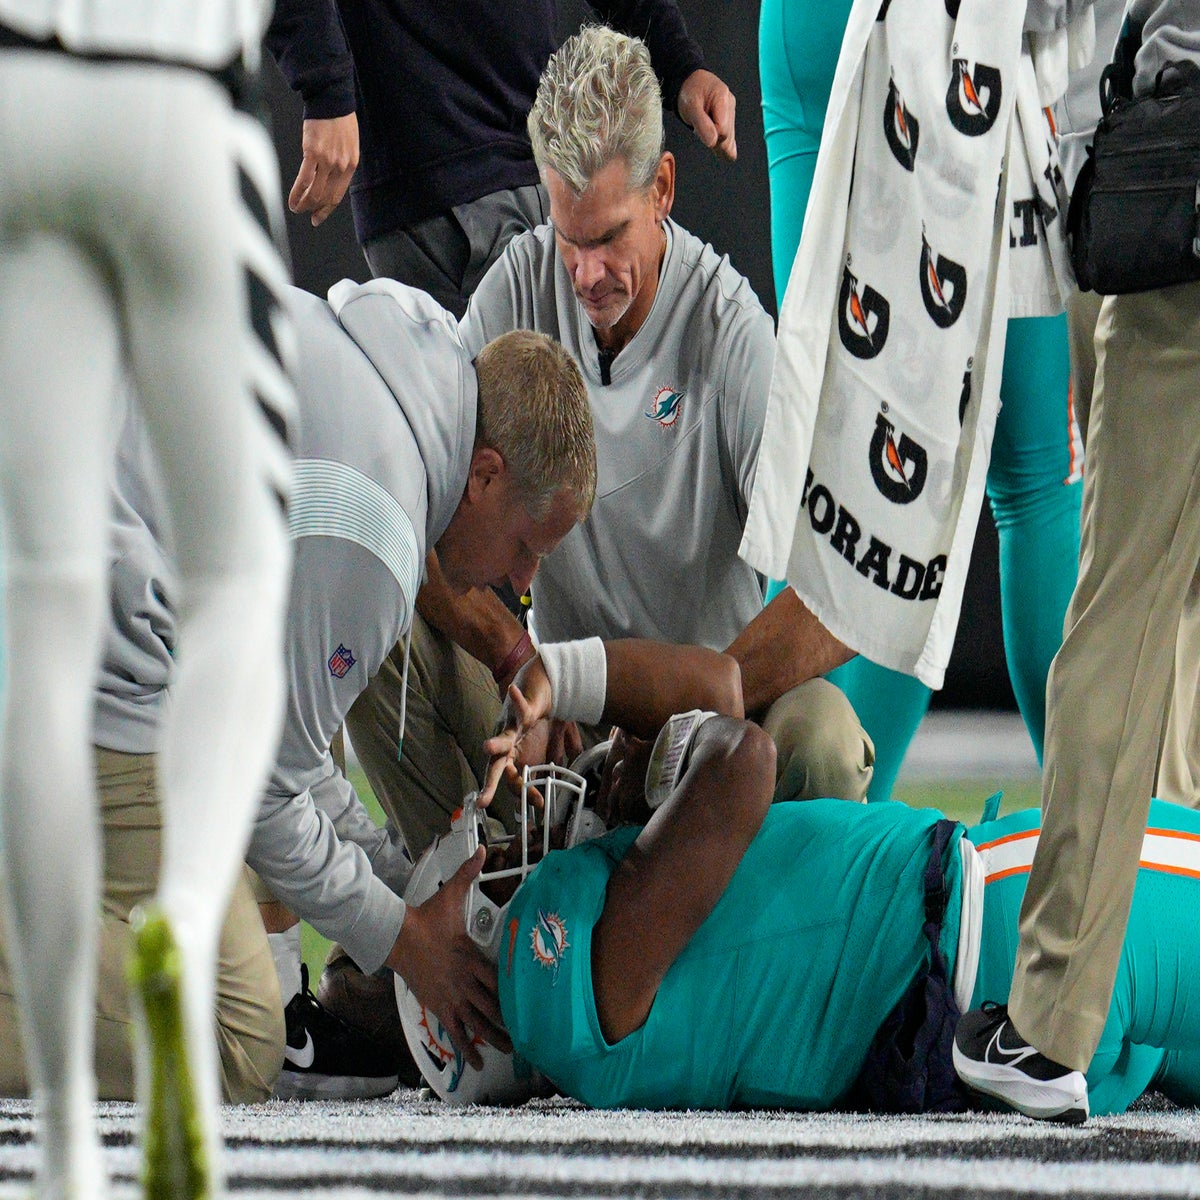 Tua Tagovailoa, Miami Dolphins quarterback, suffered concussion on